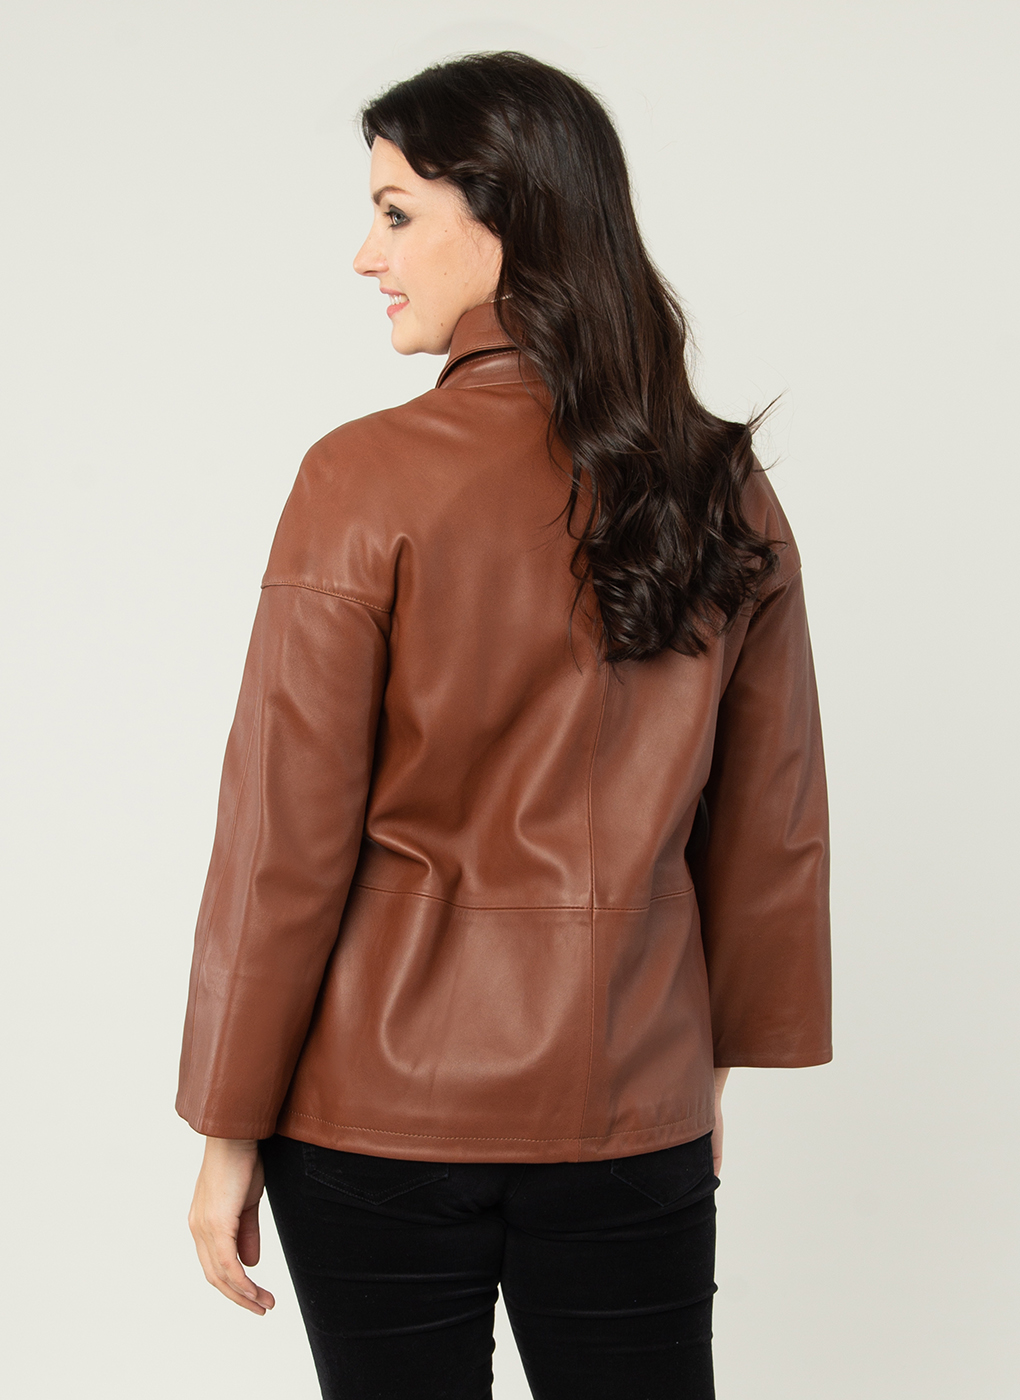 Кожаная куртка женская Каляев 1593805 коричневая 50 RU